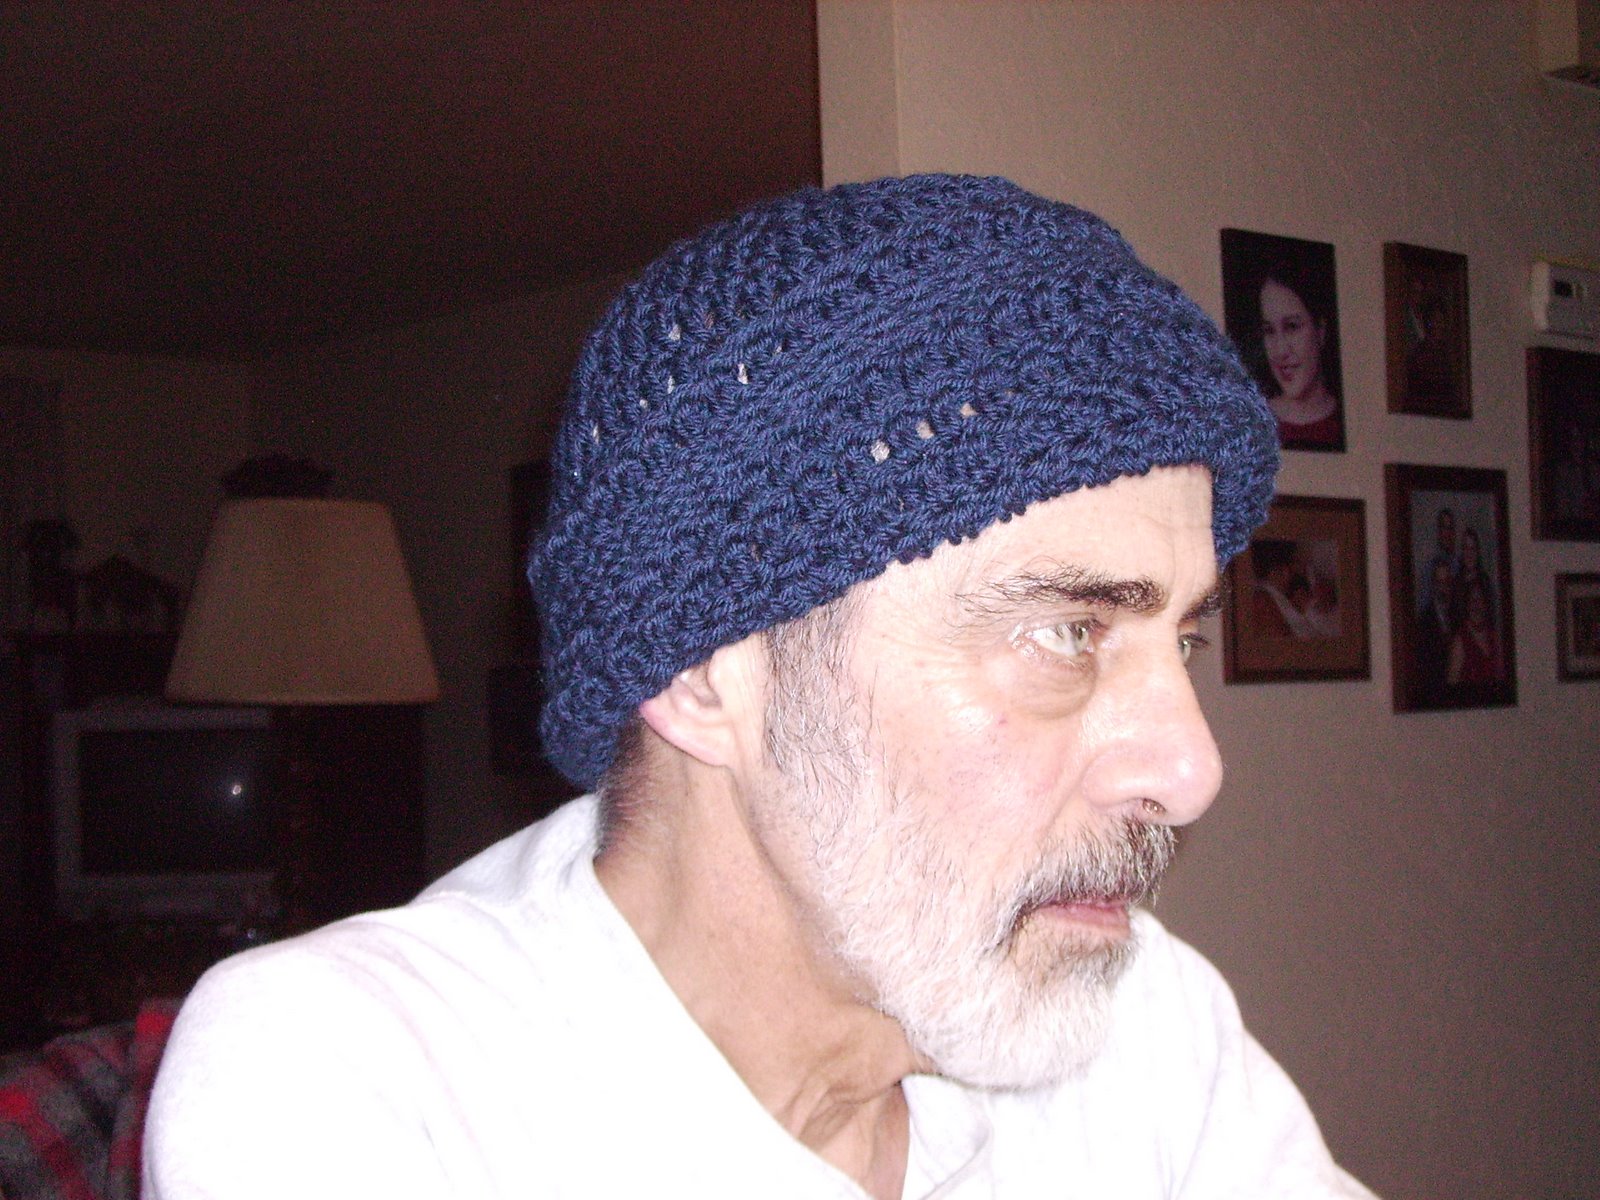 [Don+in+crochet+hat+2.jpg]